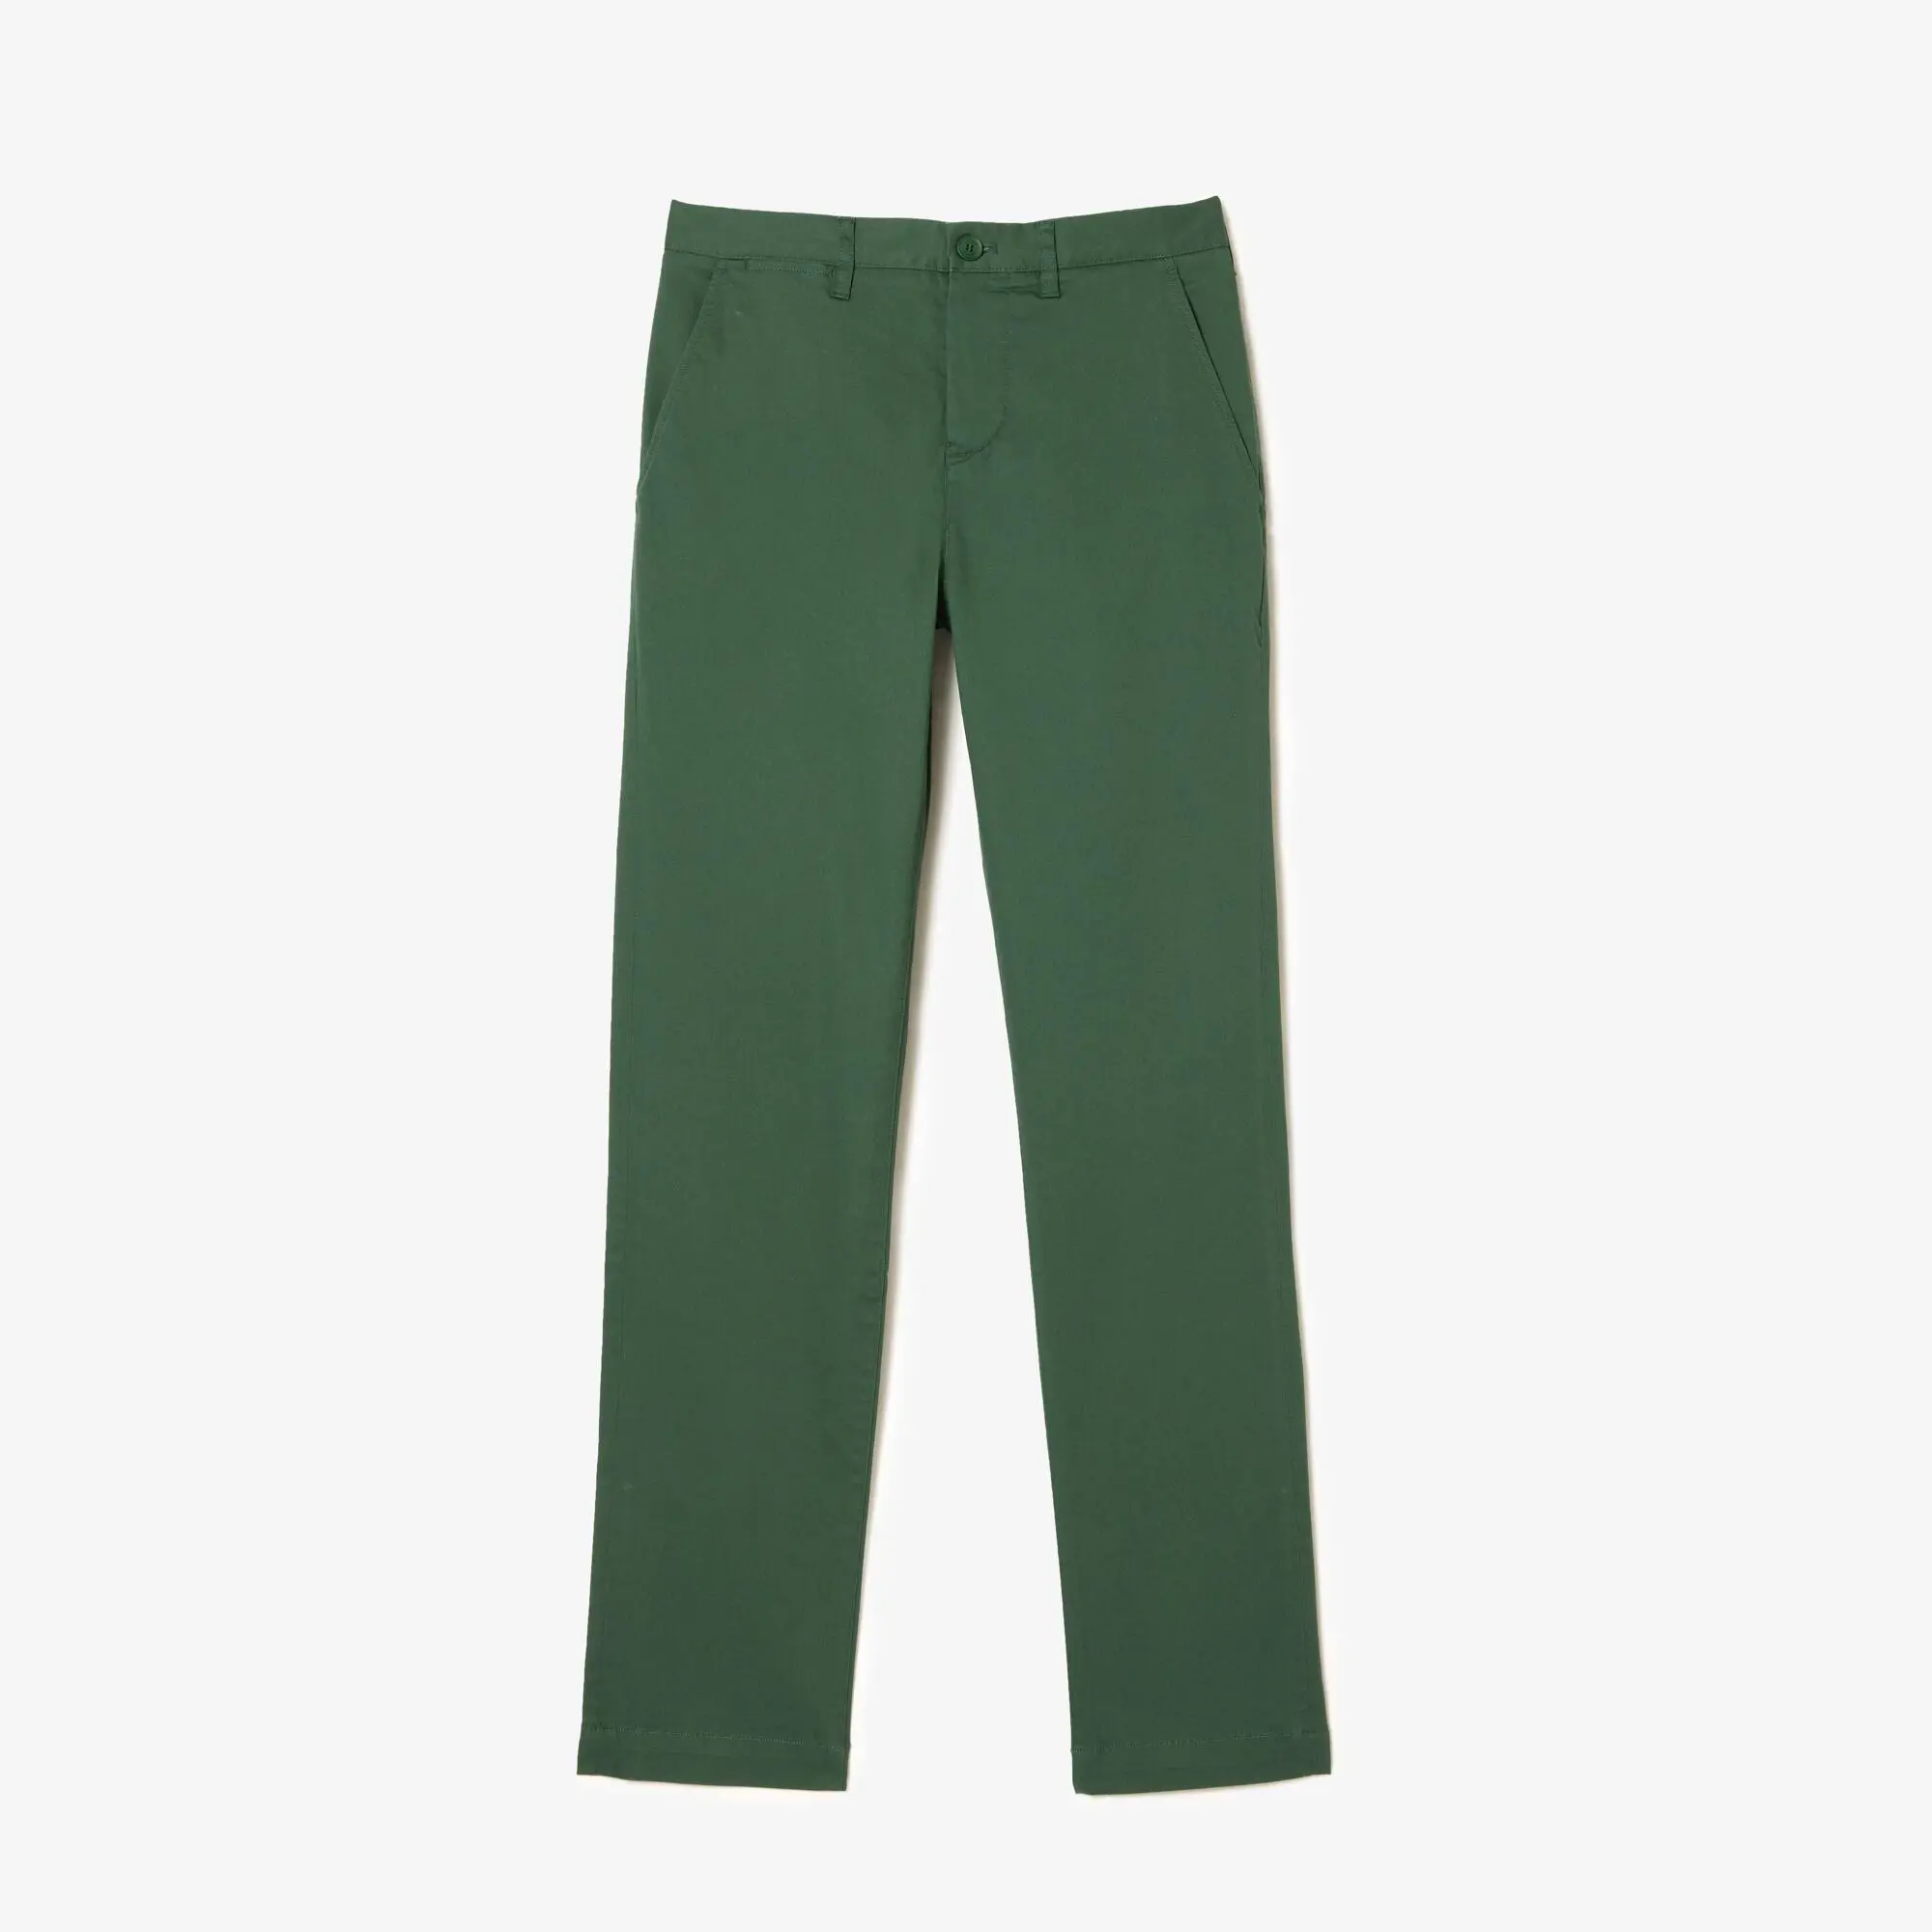 Lacoste Pantaloni da uomo slim fit in cotone elasticizzato New Classic. 2